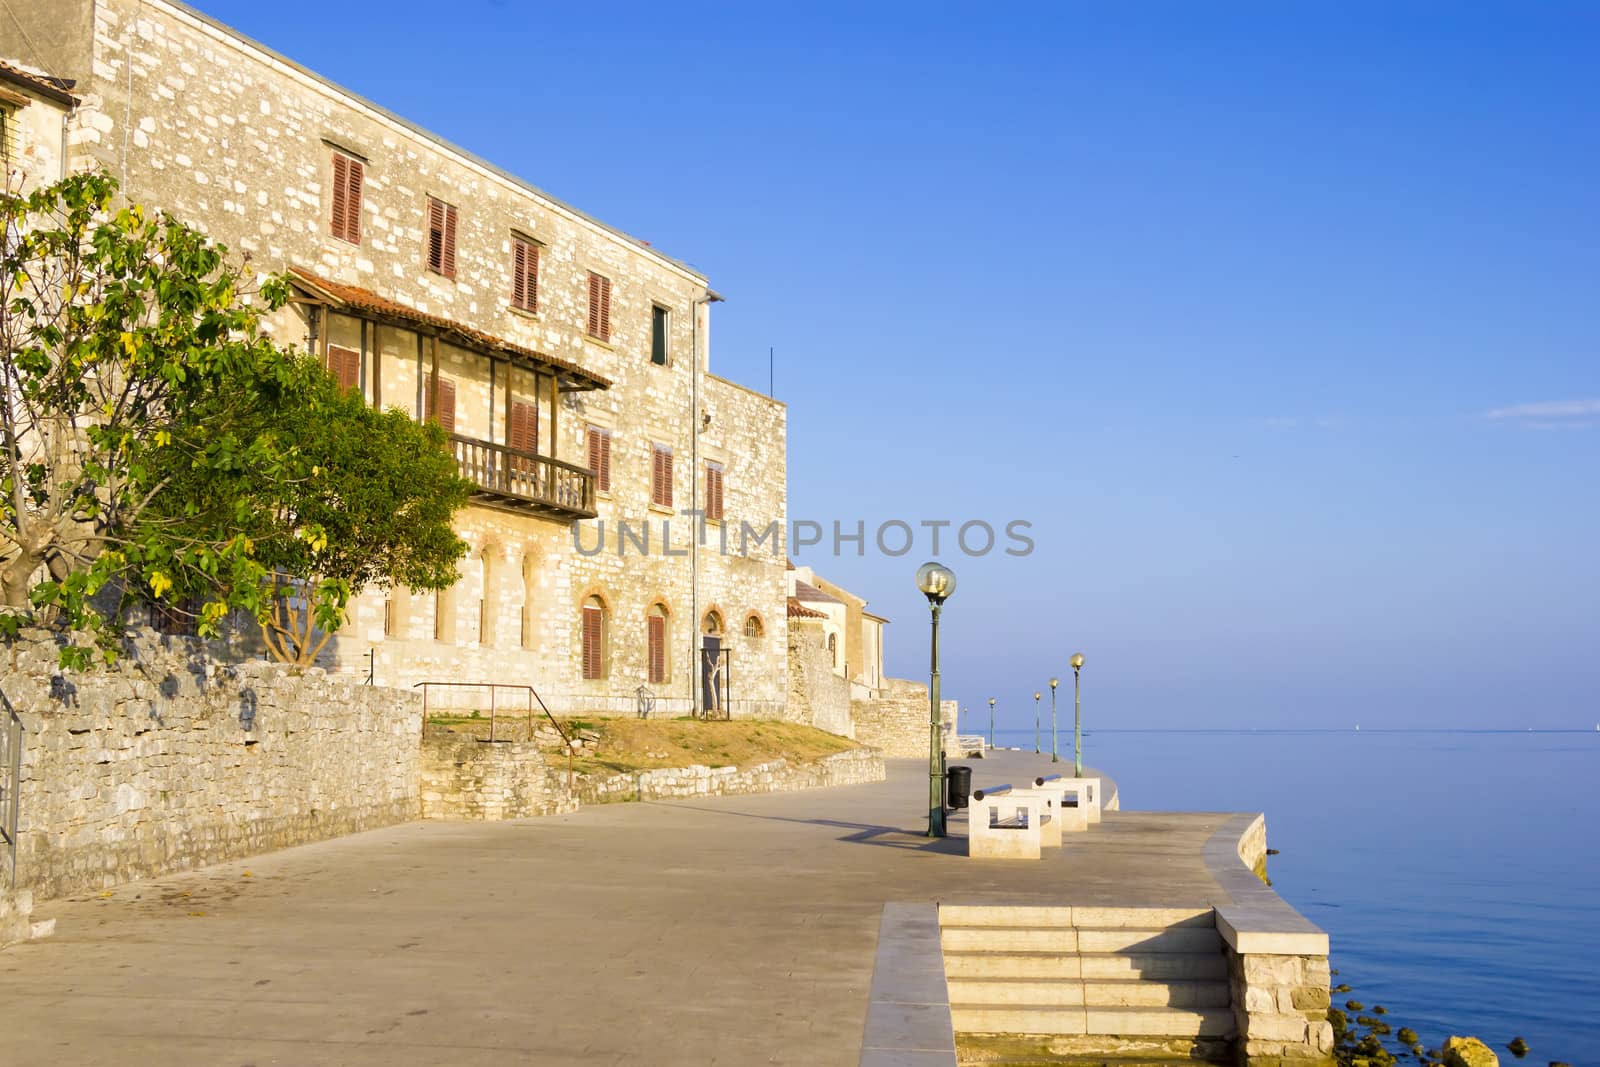 Porec - old Adriatic town in Croatia, Istria region. Popular touristic destination.